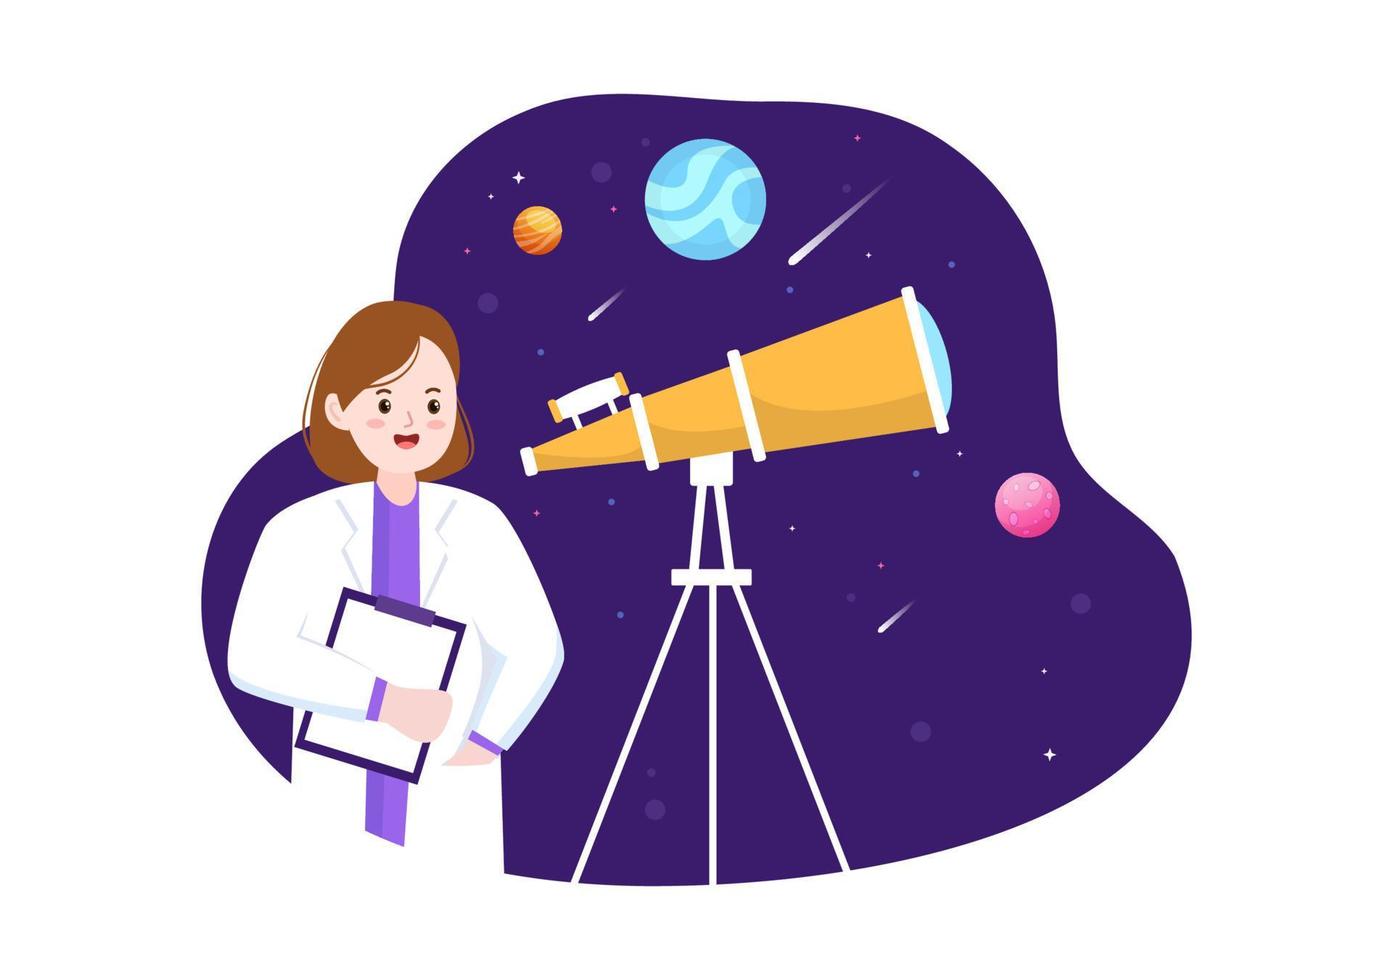 ilustração de desenhos animados de astronomia com pessoas assistindo céu estrelado à noite, galáxia e planetas no espaço sideral através do telescópio em estilo desenhado à mão plana vetor